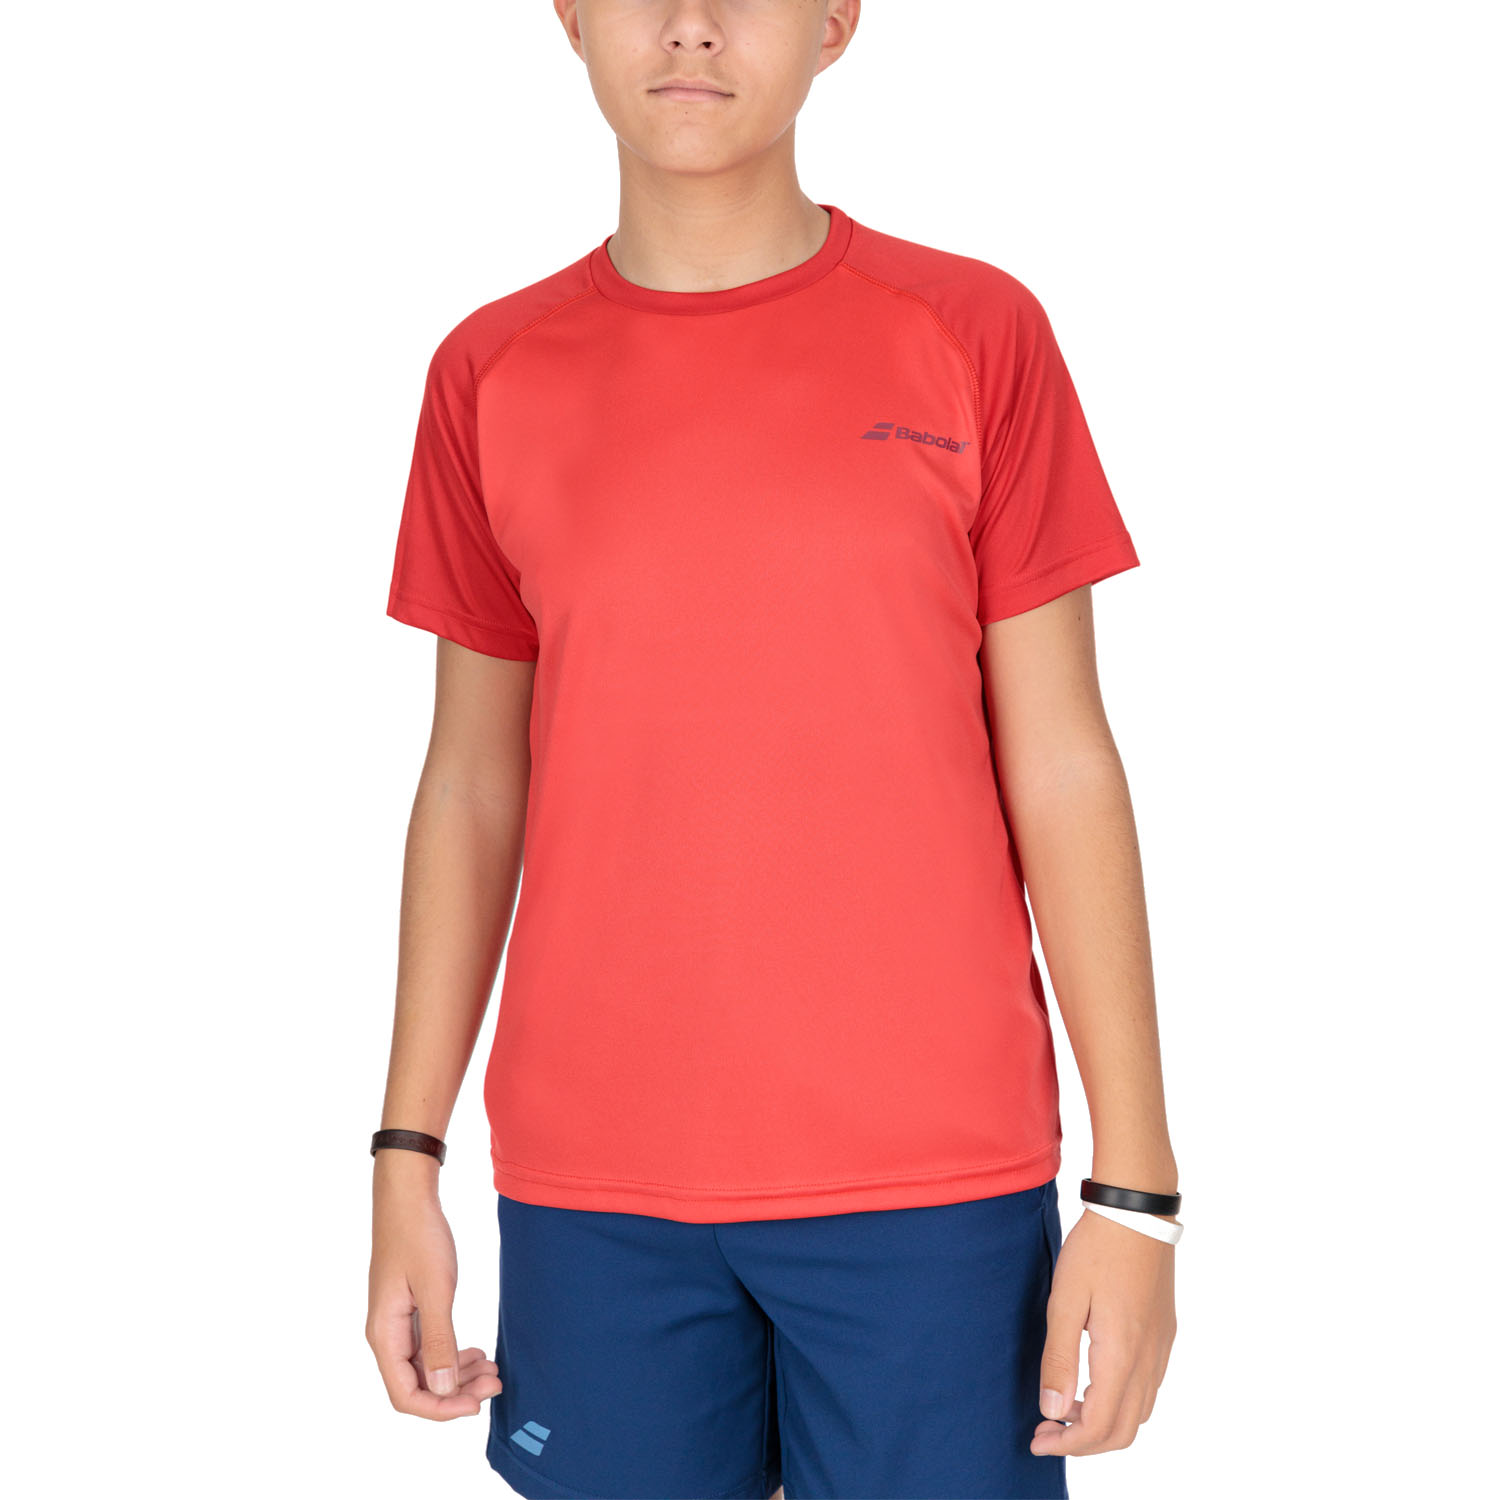 Babolat Play Crew Camiseta Niño - Tomato Red